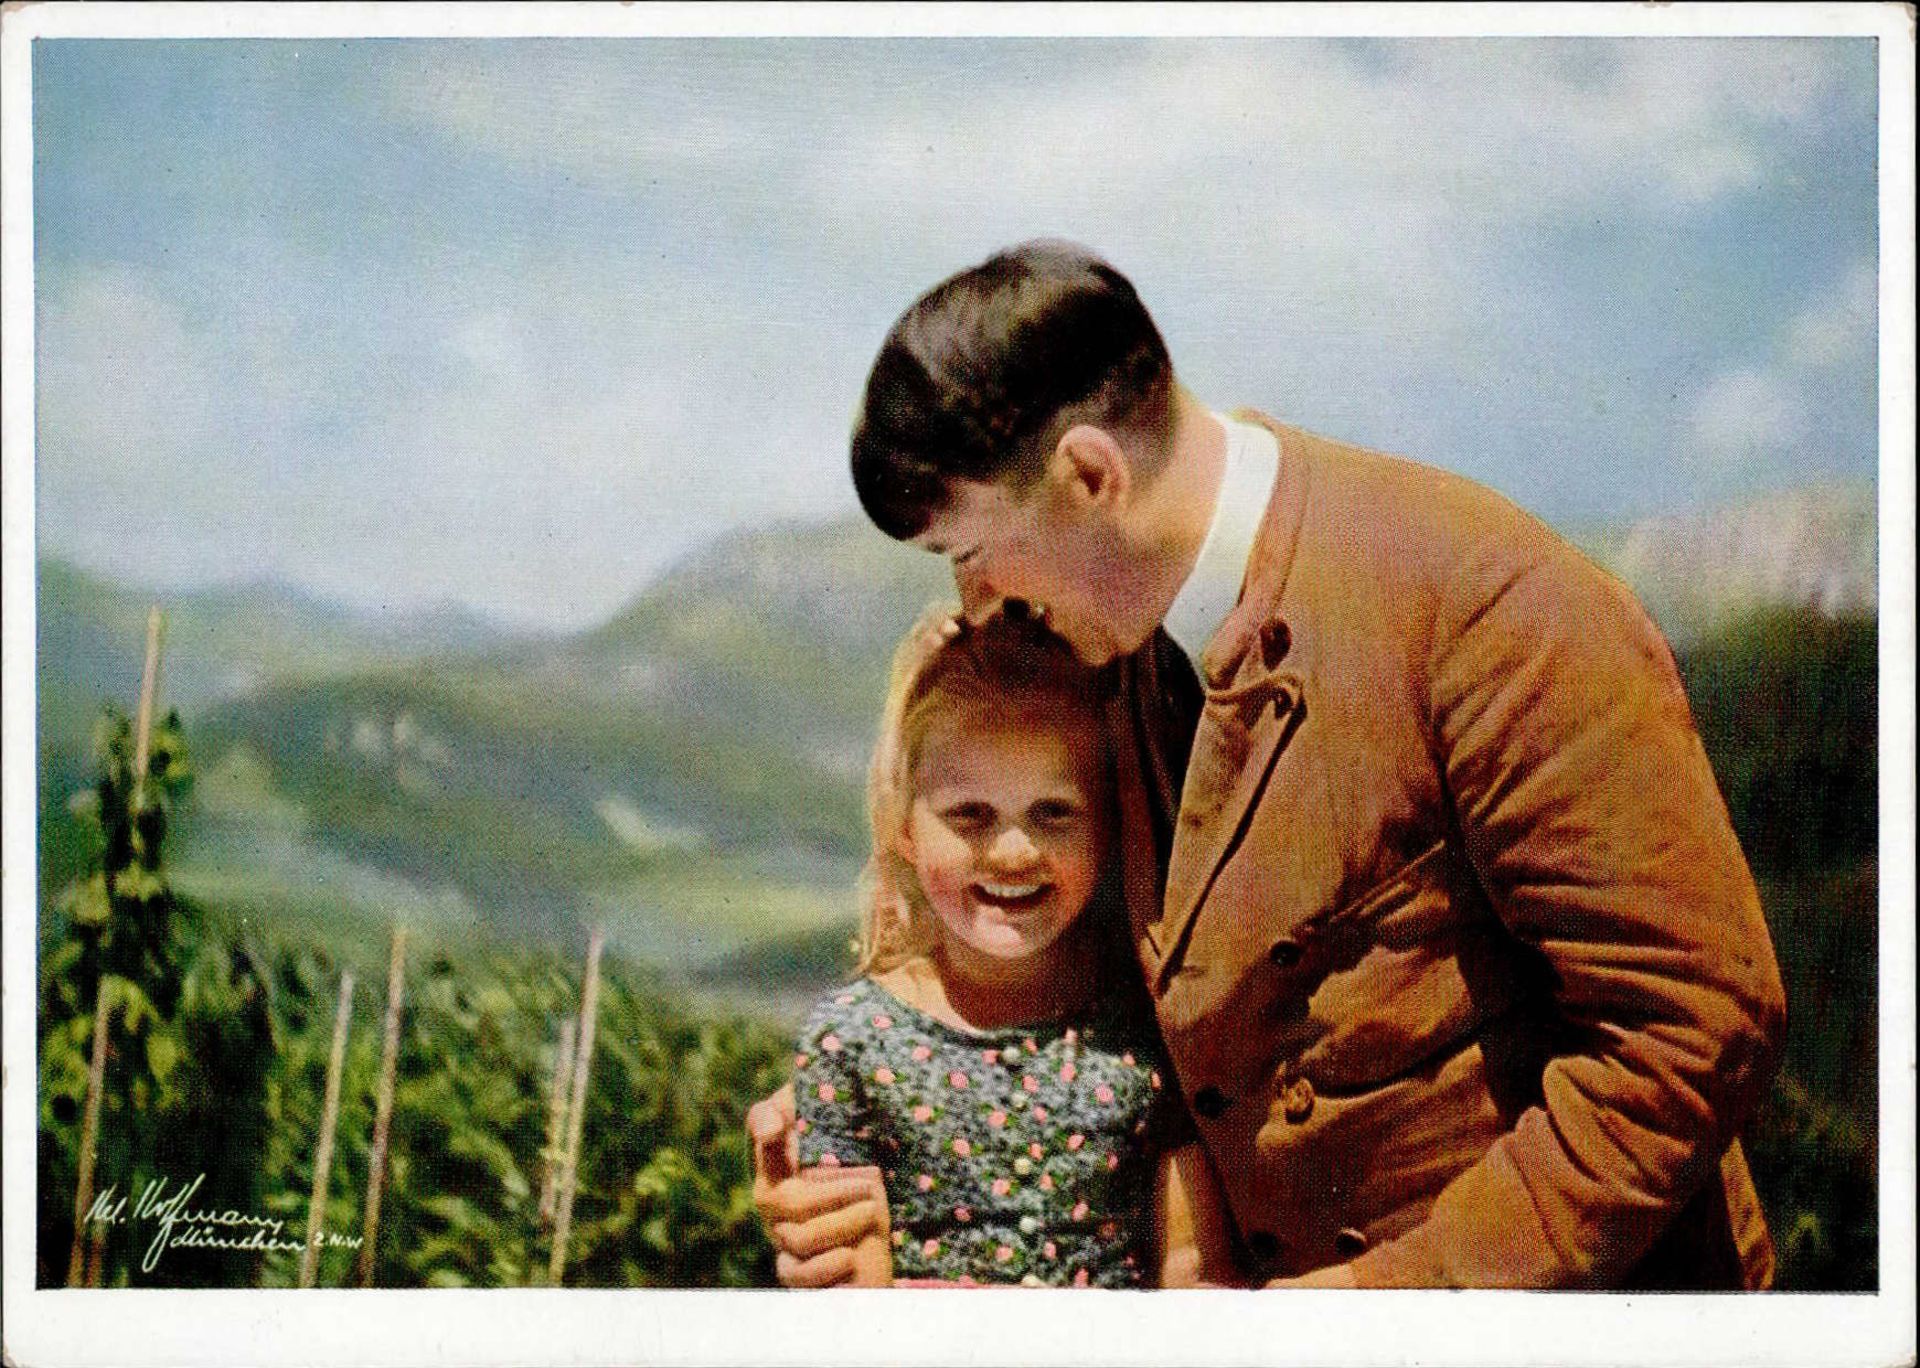 Hitler Der Führer mit der Jugend I-II